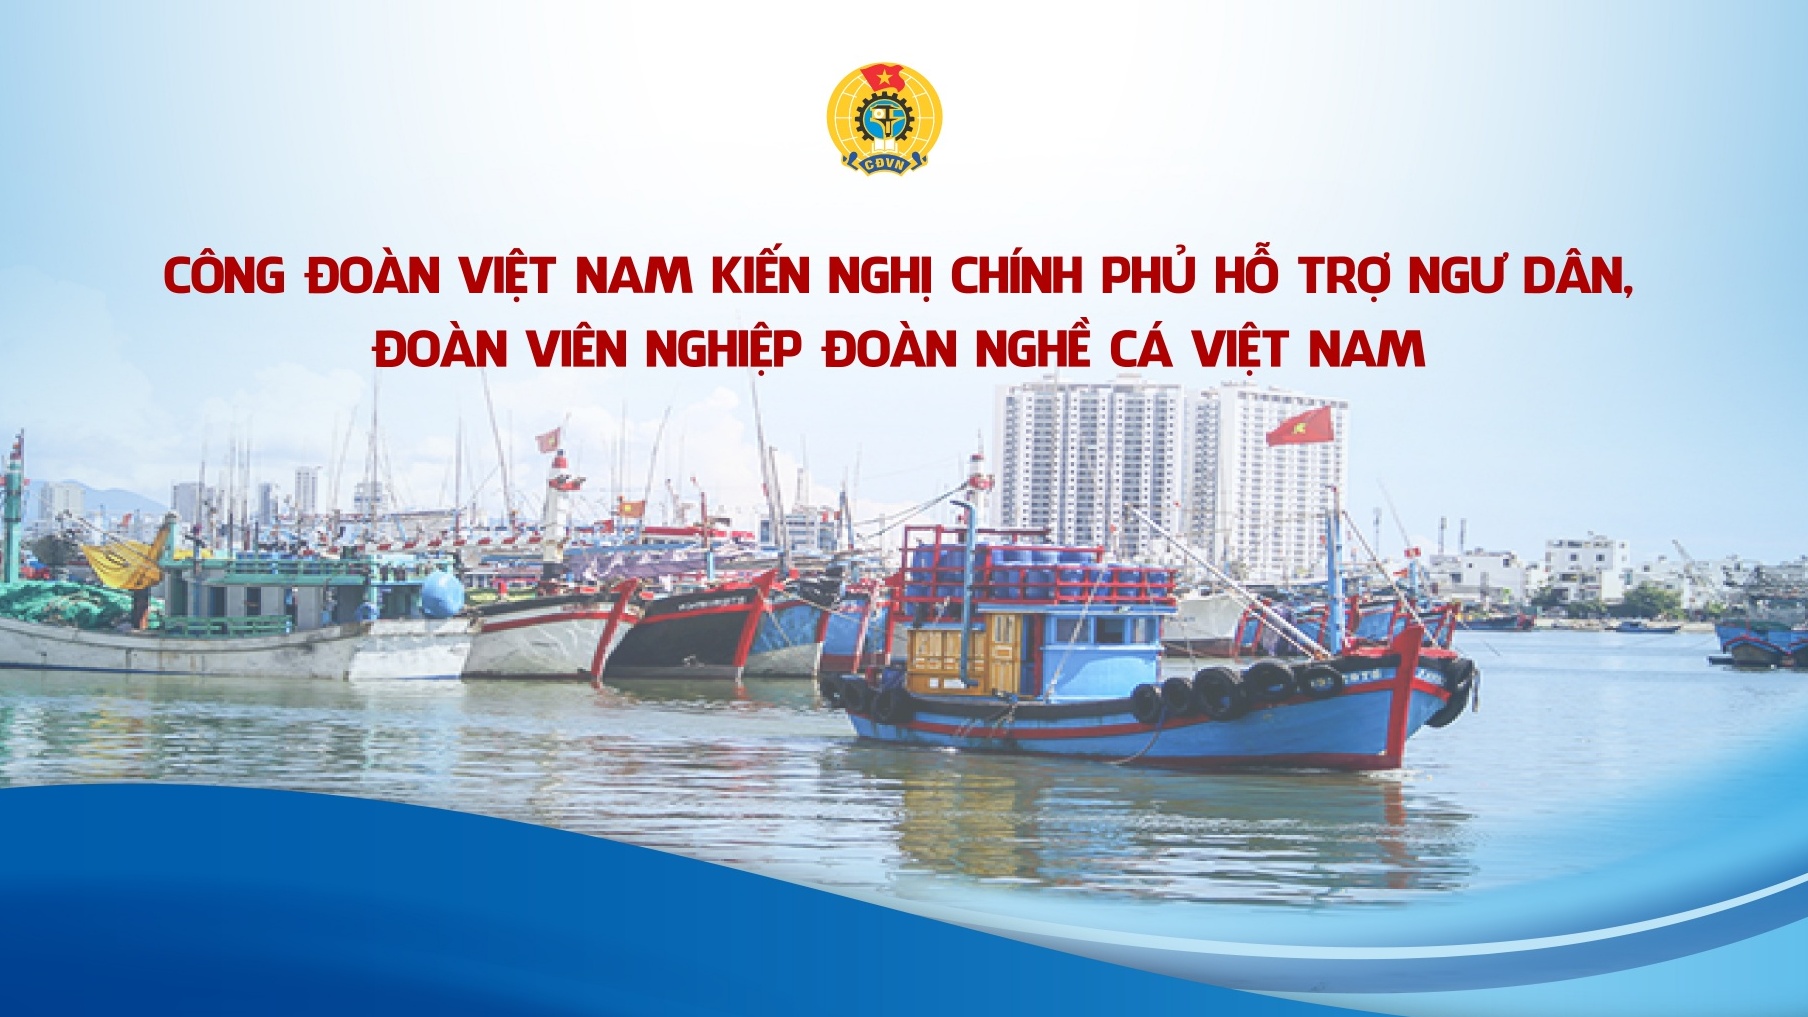 Công đoàn Việt Nam kiến nghị Chính phủ hỗ trợ ngư dân, đoàn viên Nghiệp đoàn Nghề cá